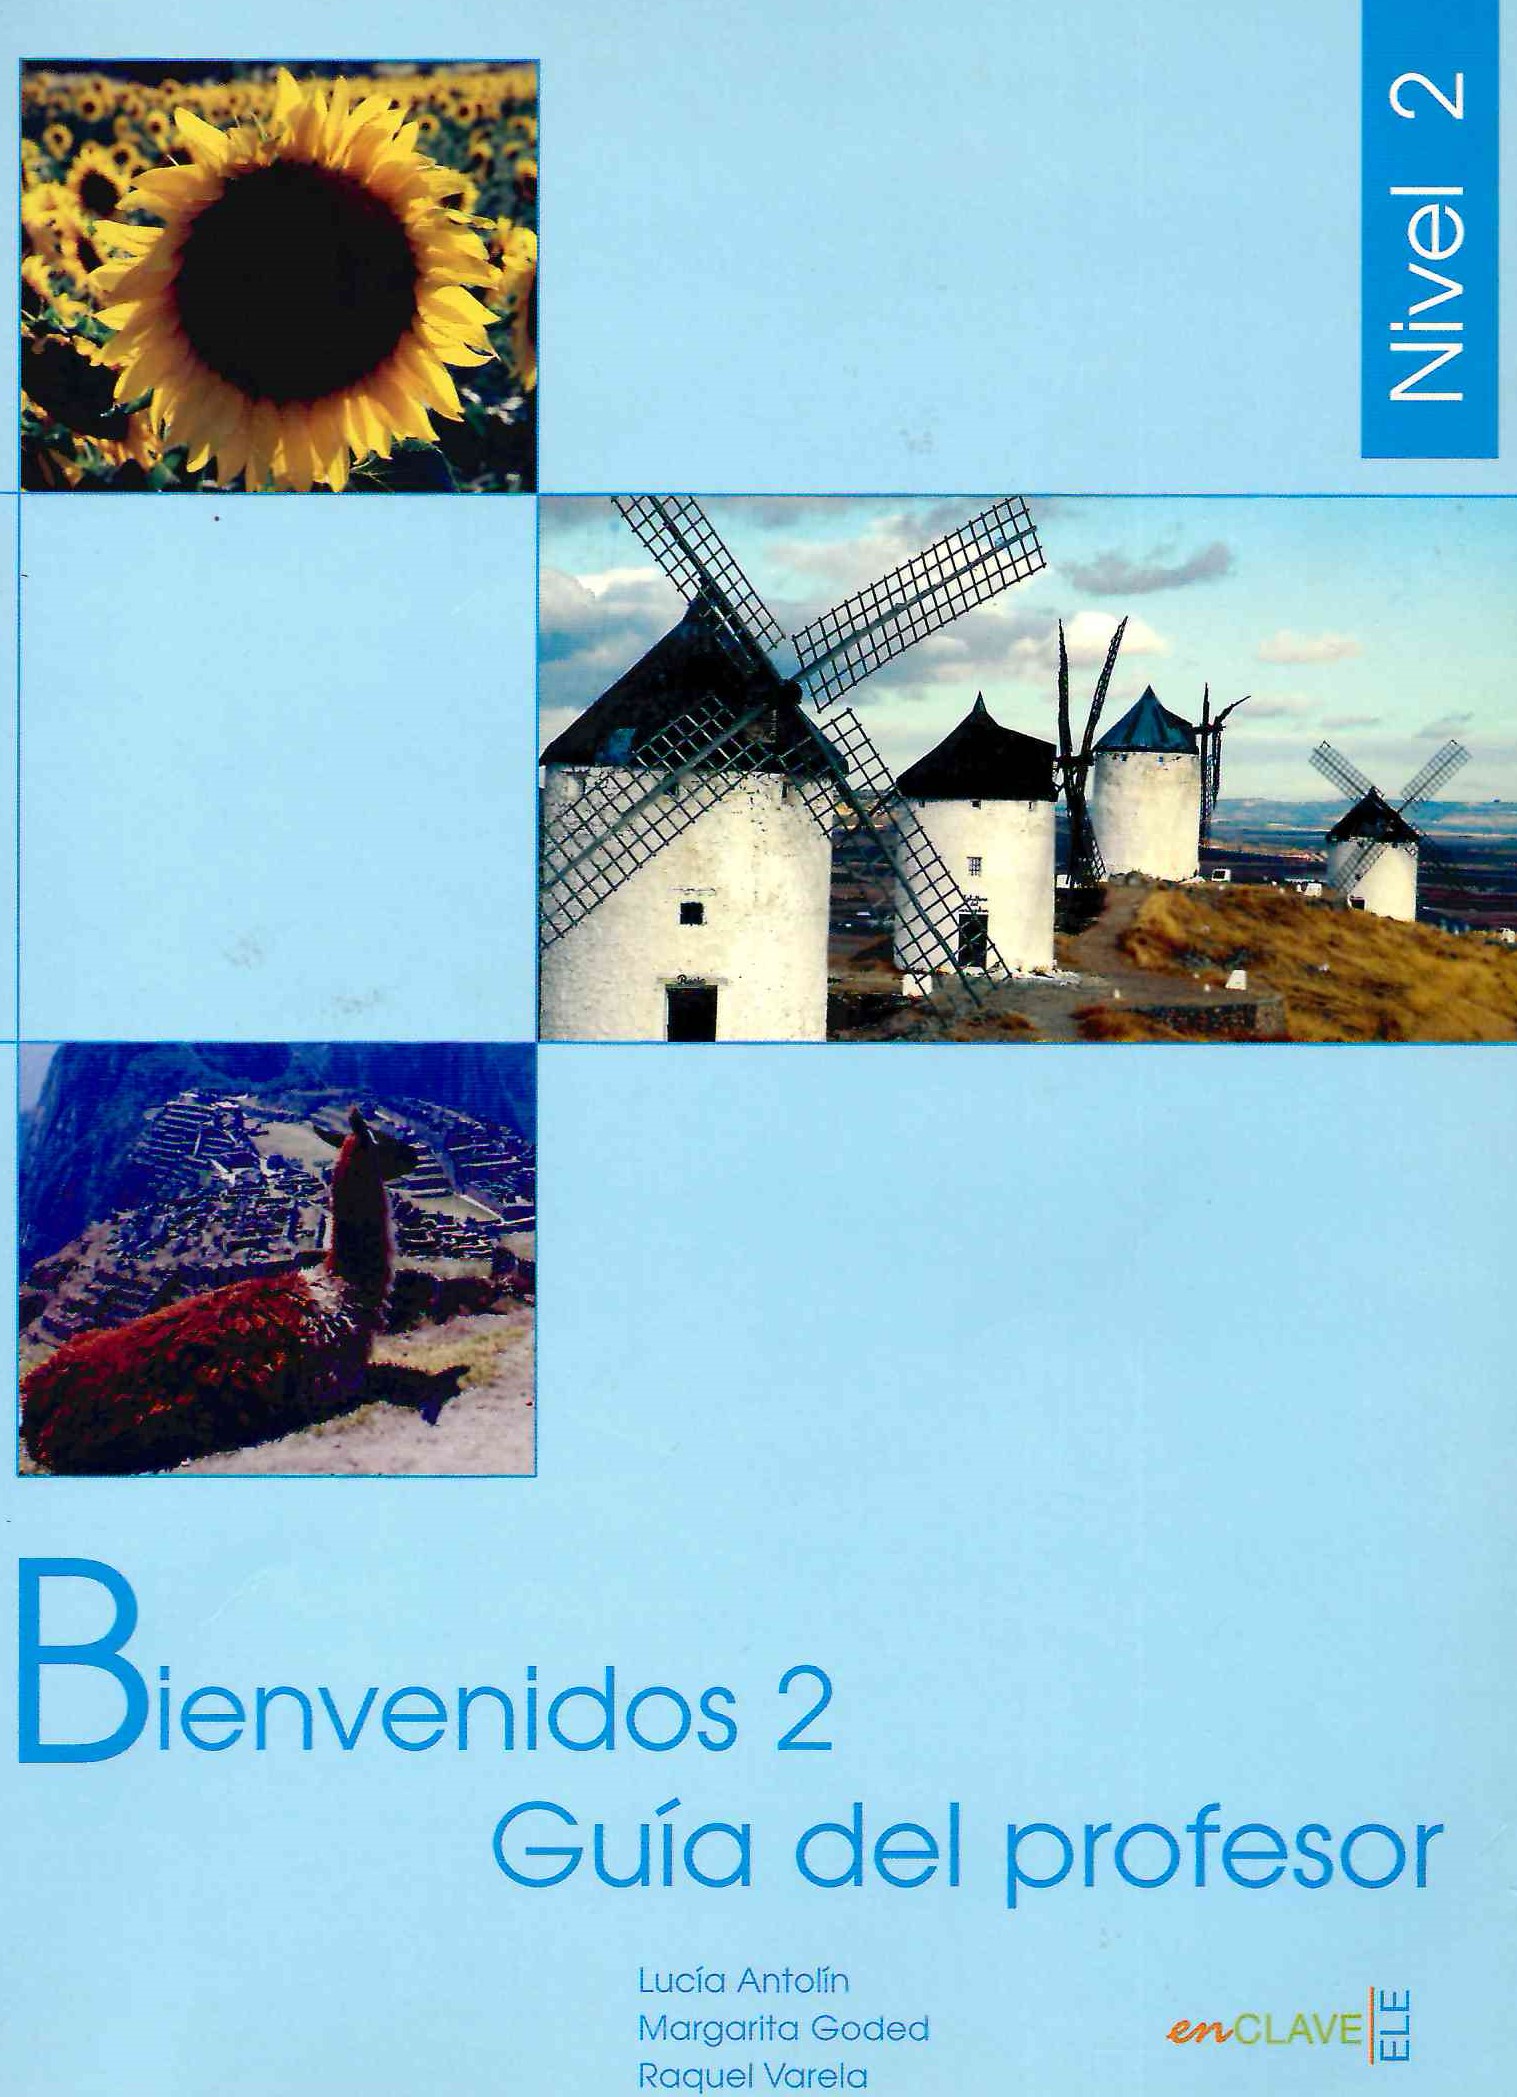 Bienvenidos 2 Guia del profesor / Книга для учителя